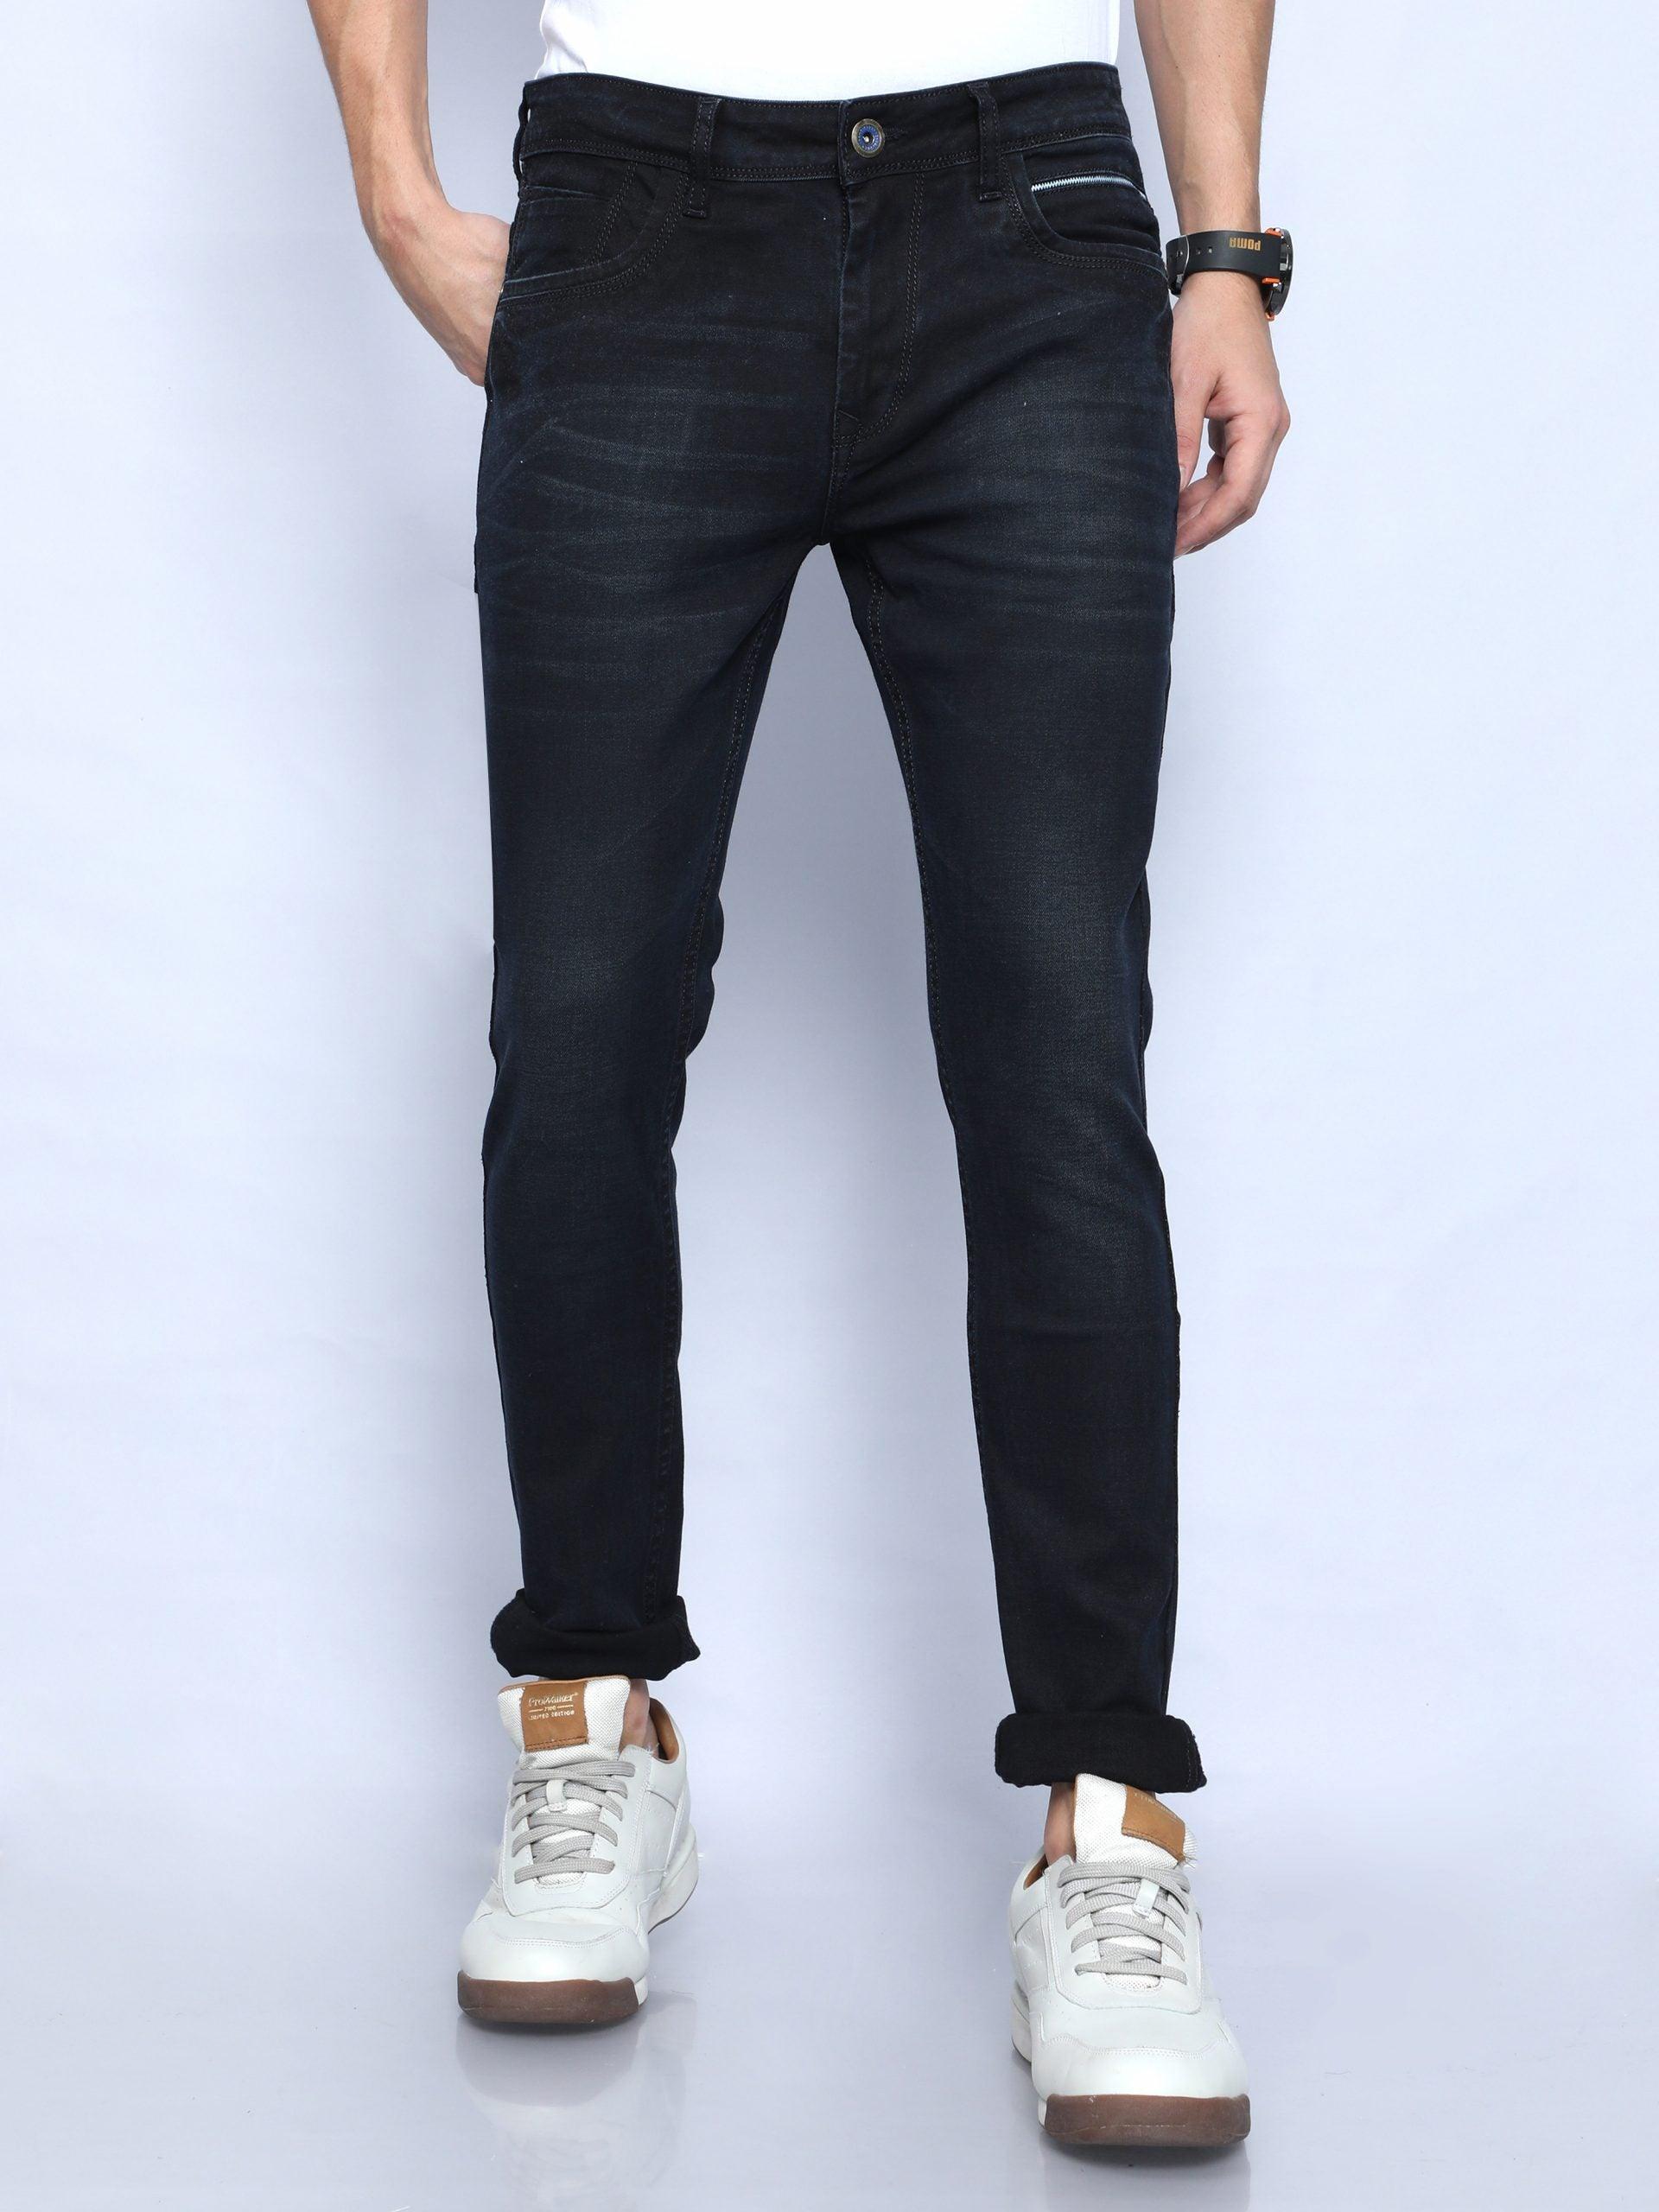 Men's Skinny Fit Jeans - Black - Triggerjeans